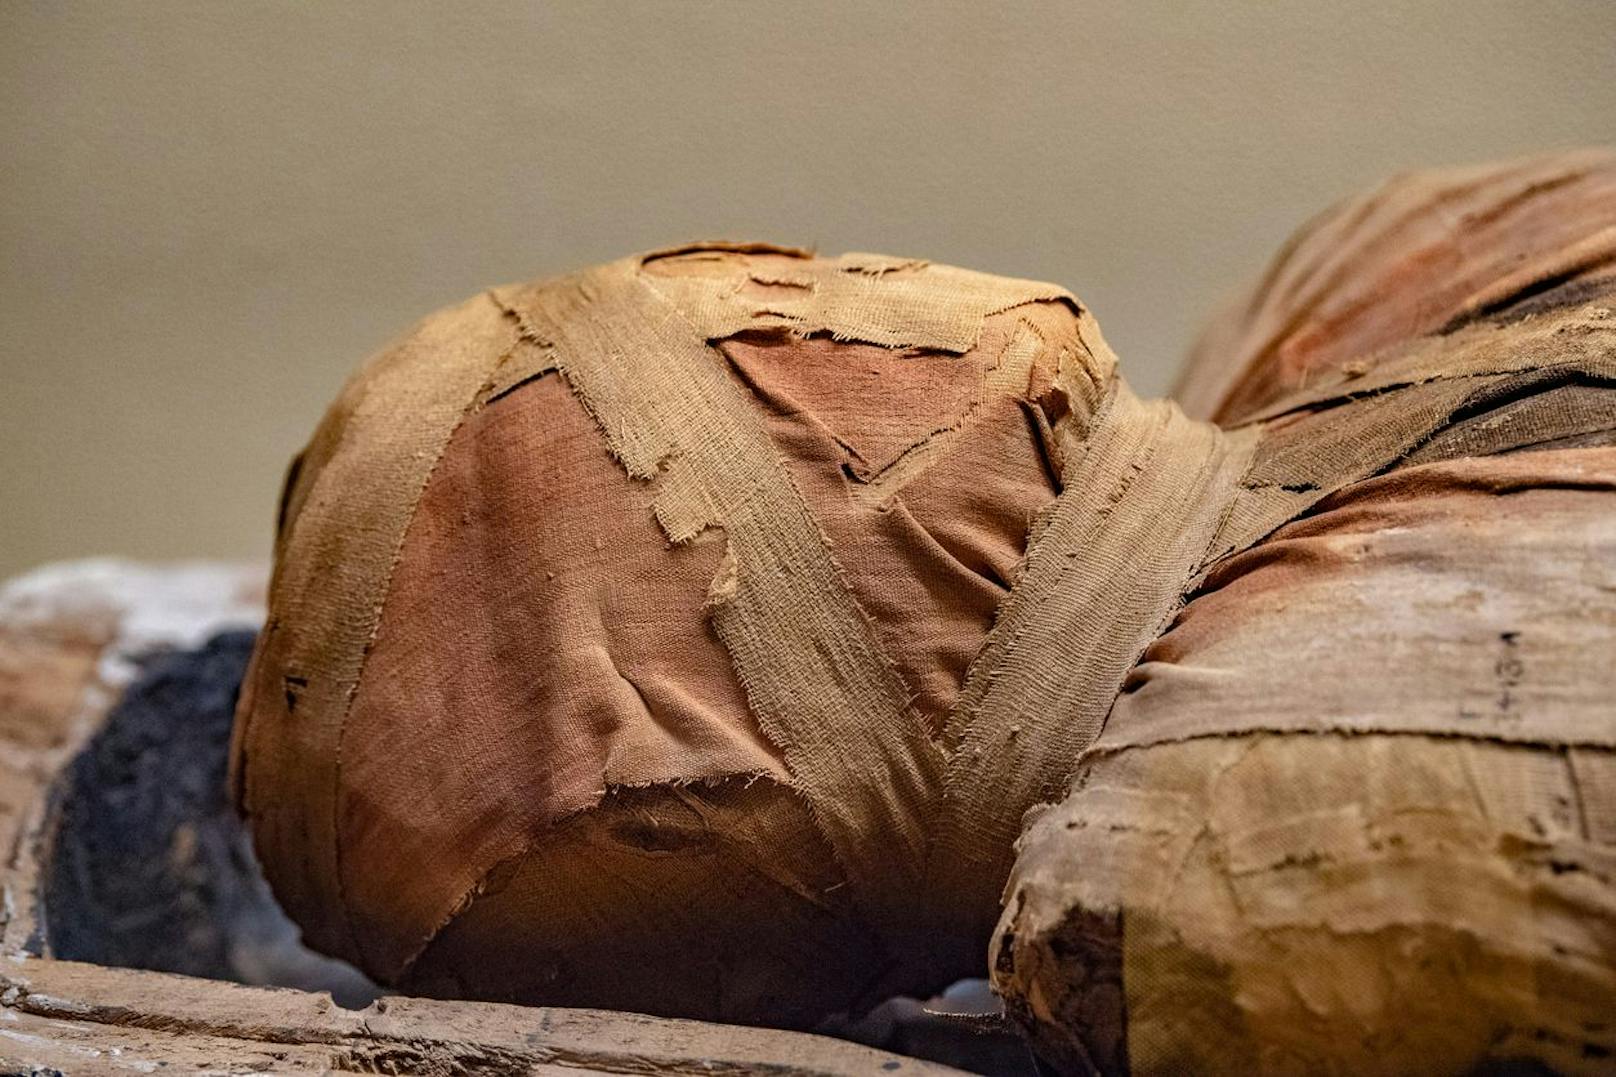 Die Ägypter glaubten an eine Wiederbelebung nach dem Tod. Diese war aber nur möglich, wenn die Seele den Körper wiederfinden und wiedererkennen konnte. Dafür musste der Körper unversehrt sein. So entstand der Brauch der Mumifizierung.